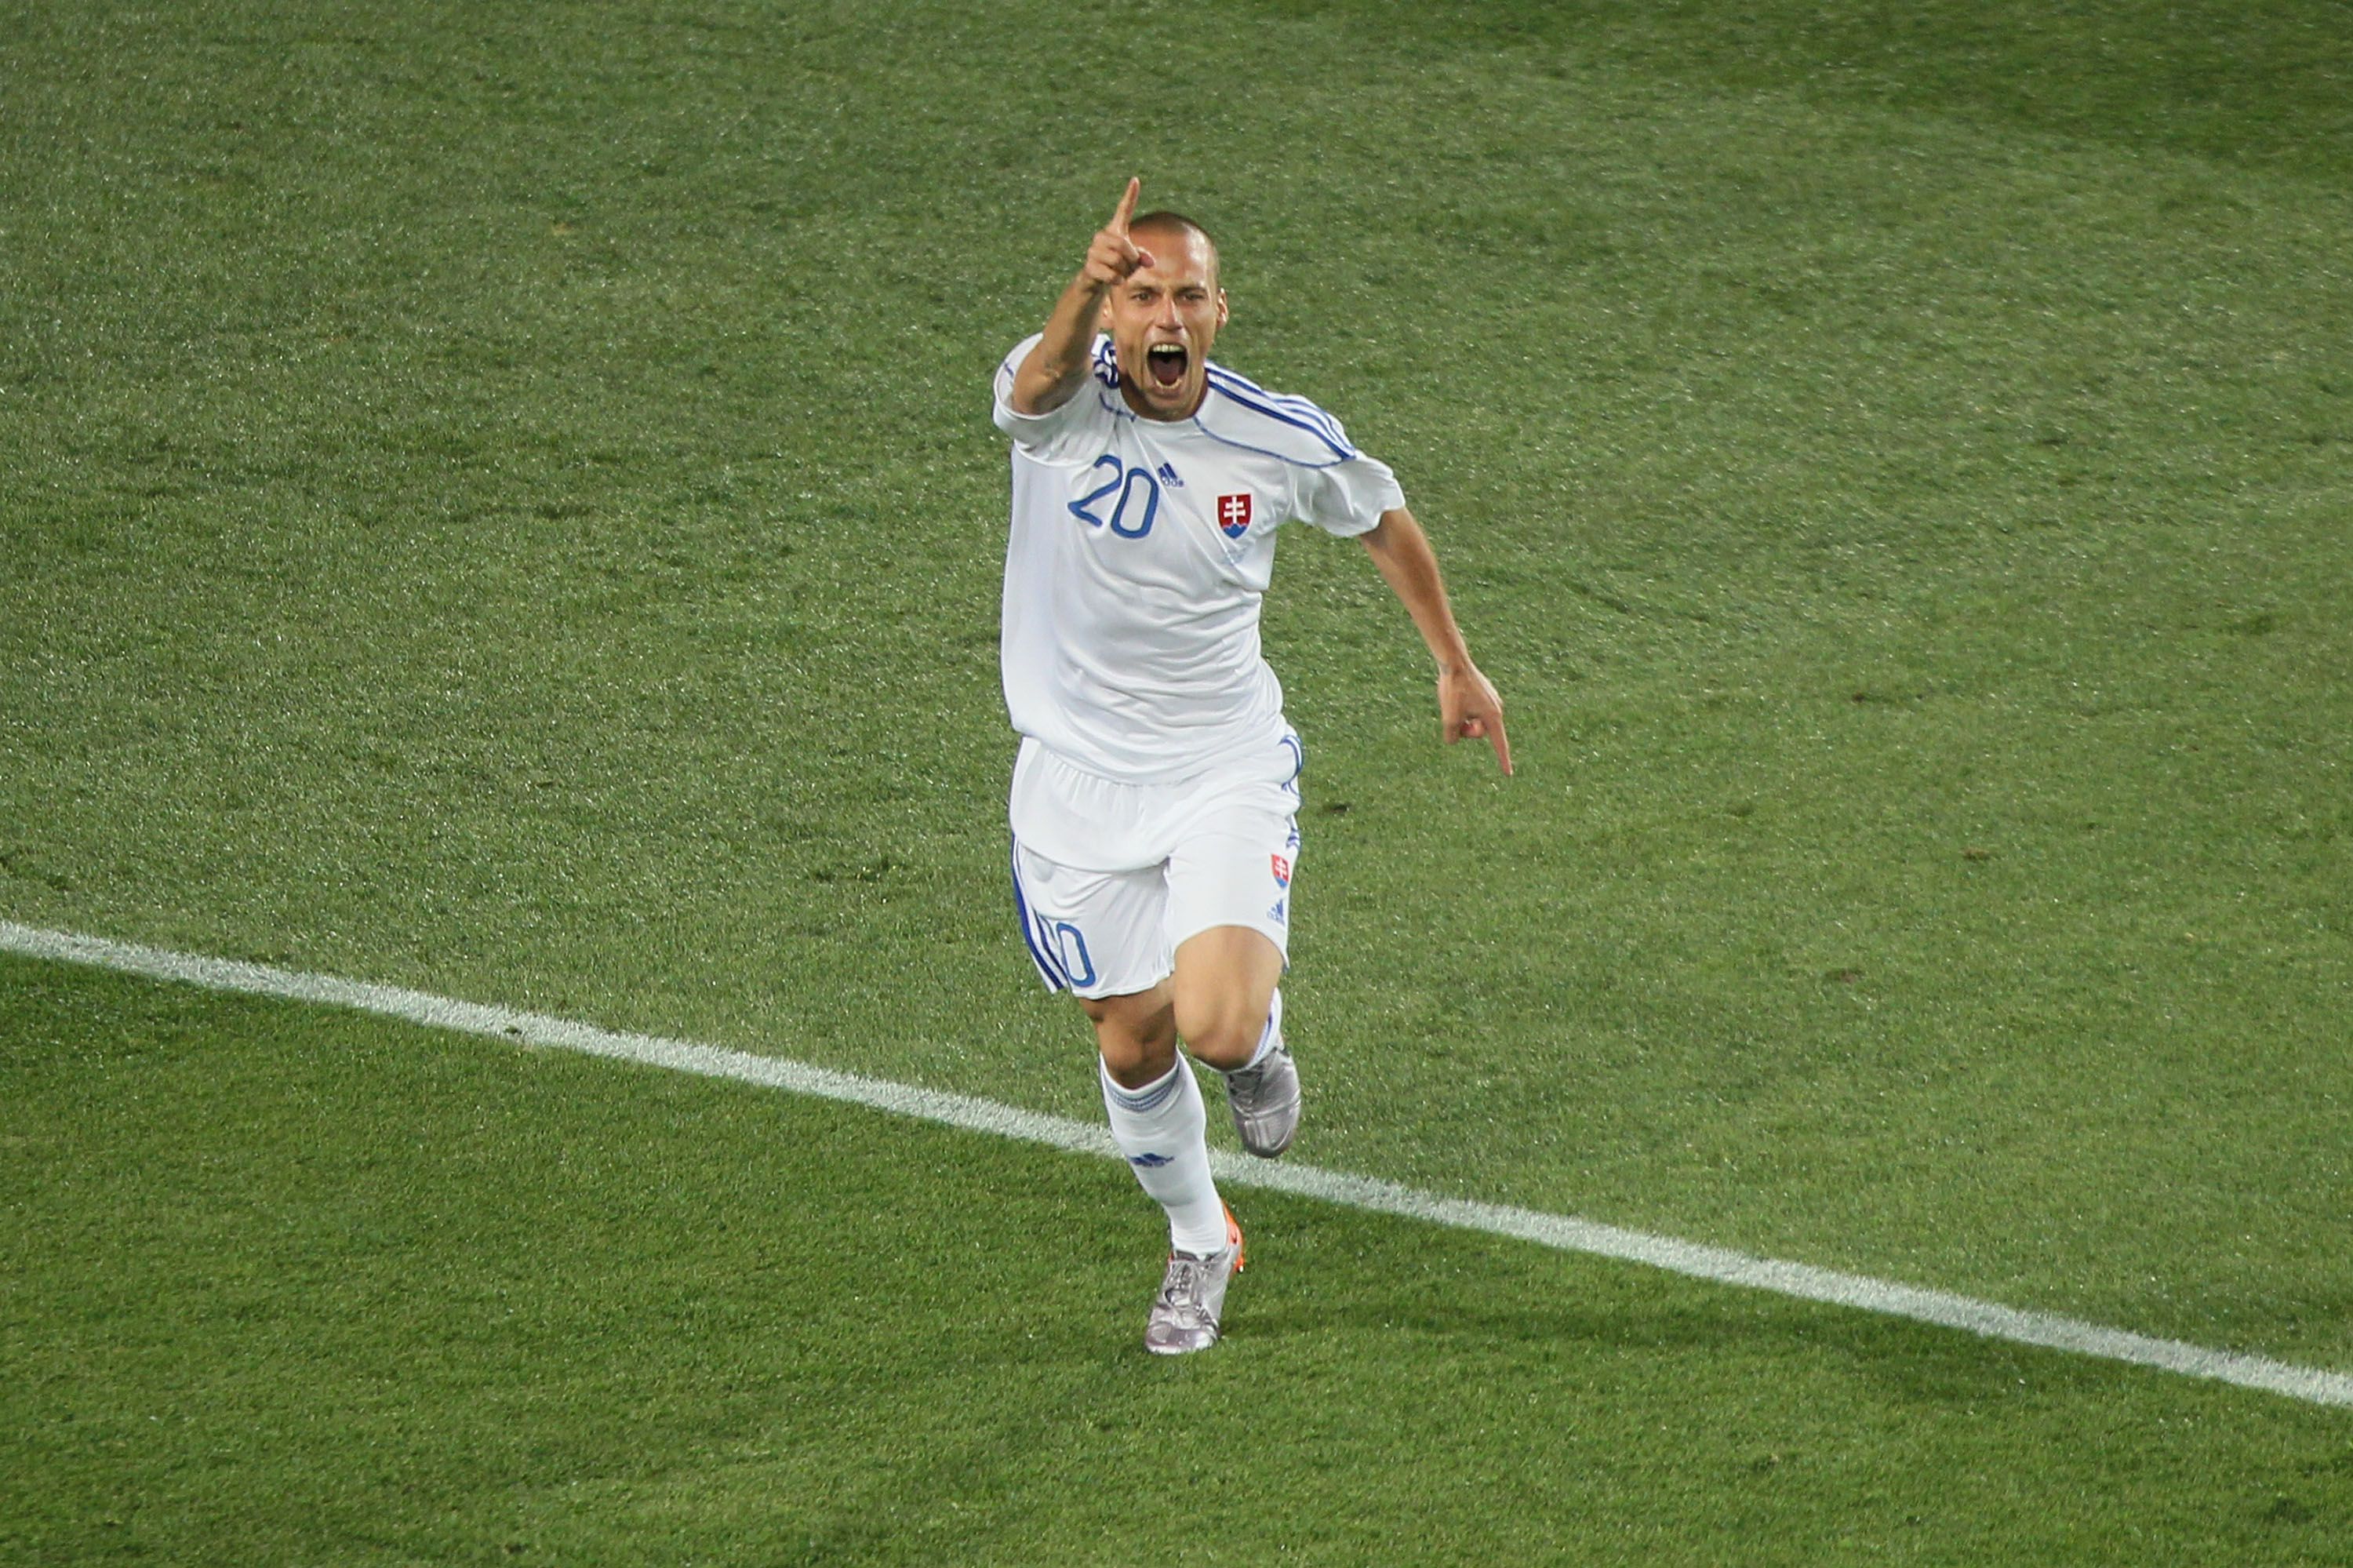 A 2010-es vb-n győztes gólt lőtt az olaszok ellen (3-2) Fotó: GettyImages